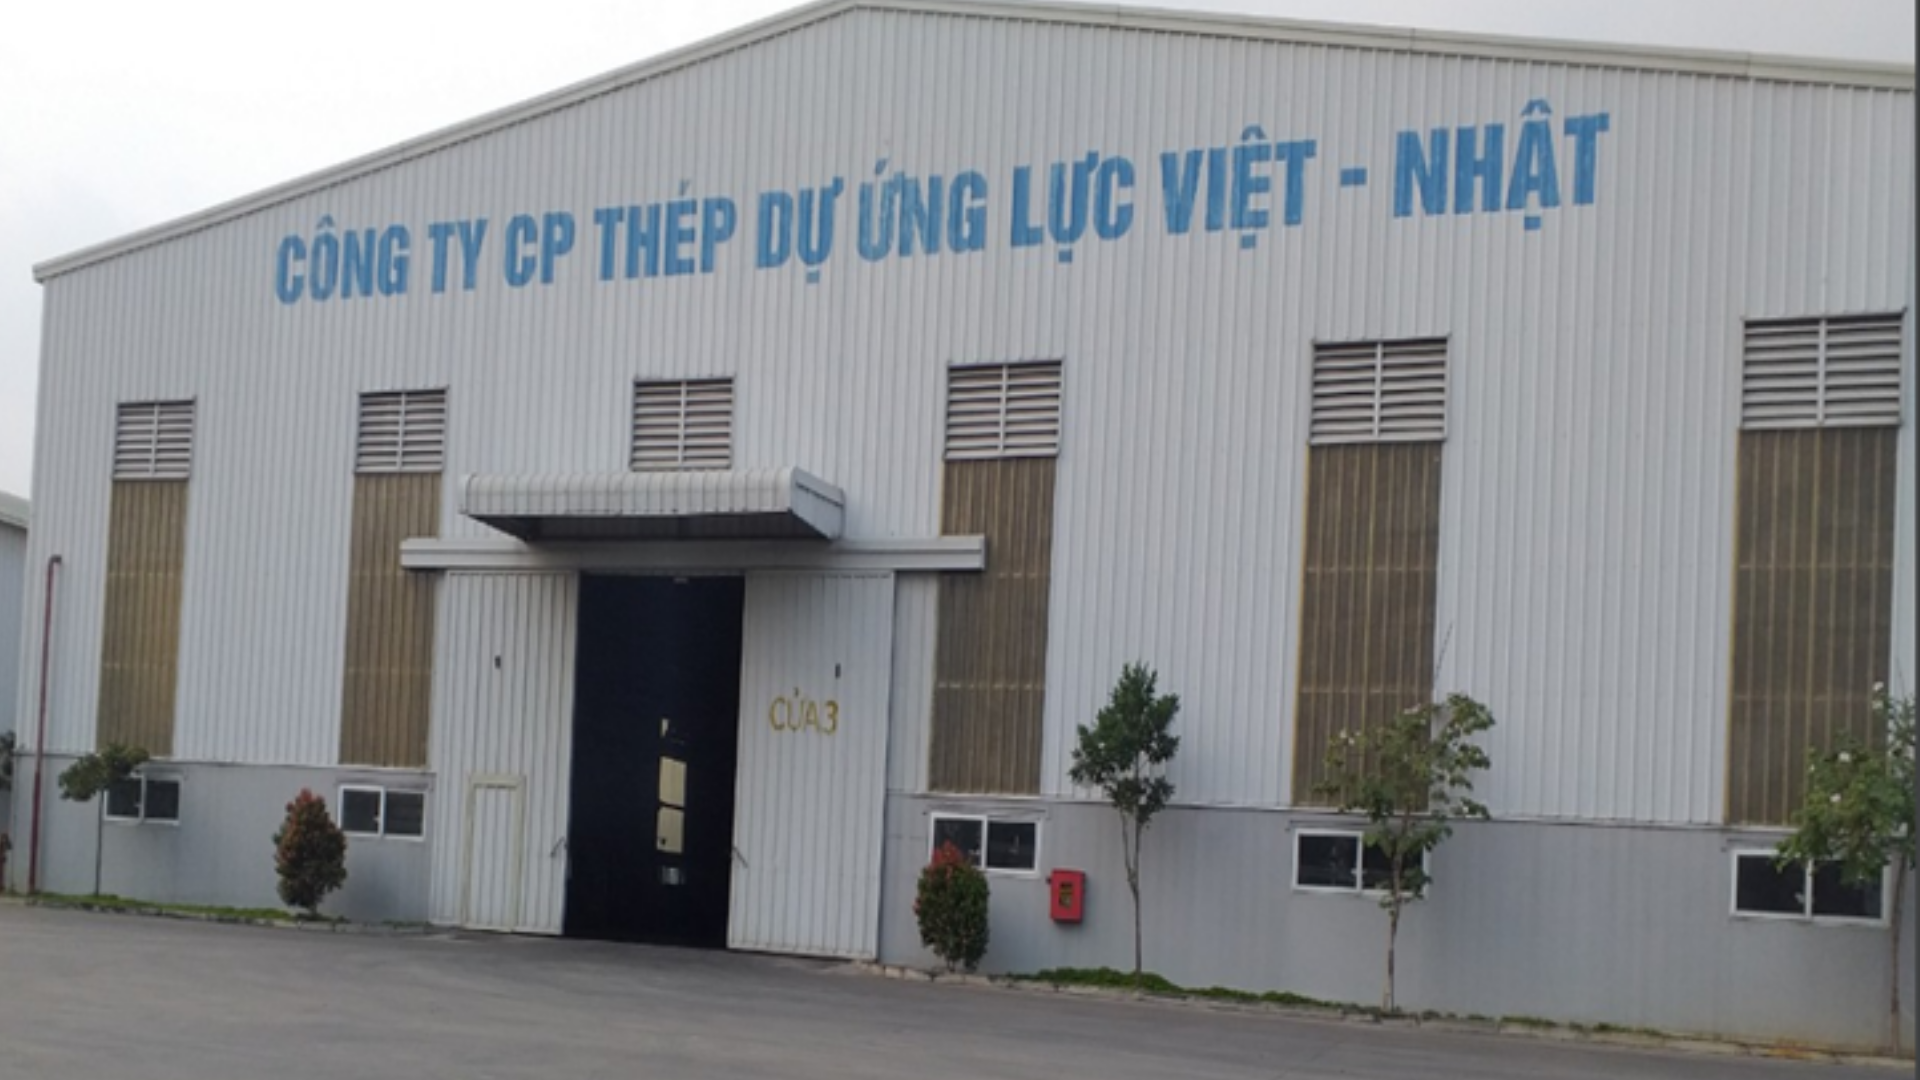 NKC Hưng Yên_Công ty TNHH cổ phần thép dự ứng lực Việt Nhật